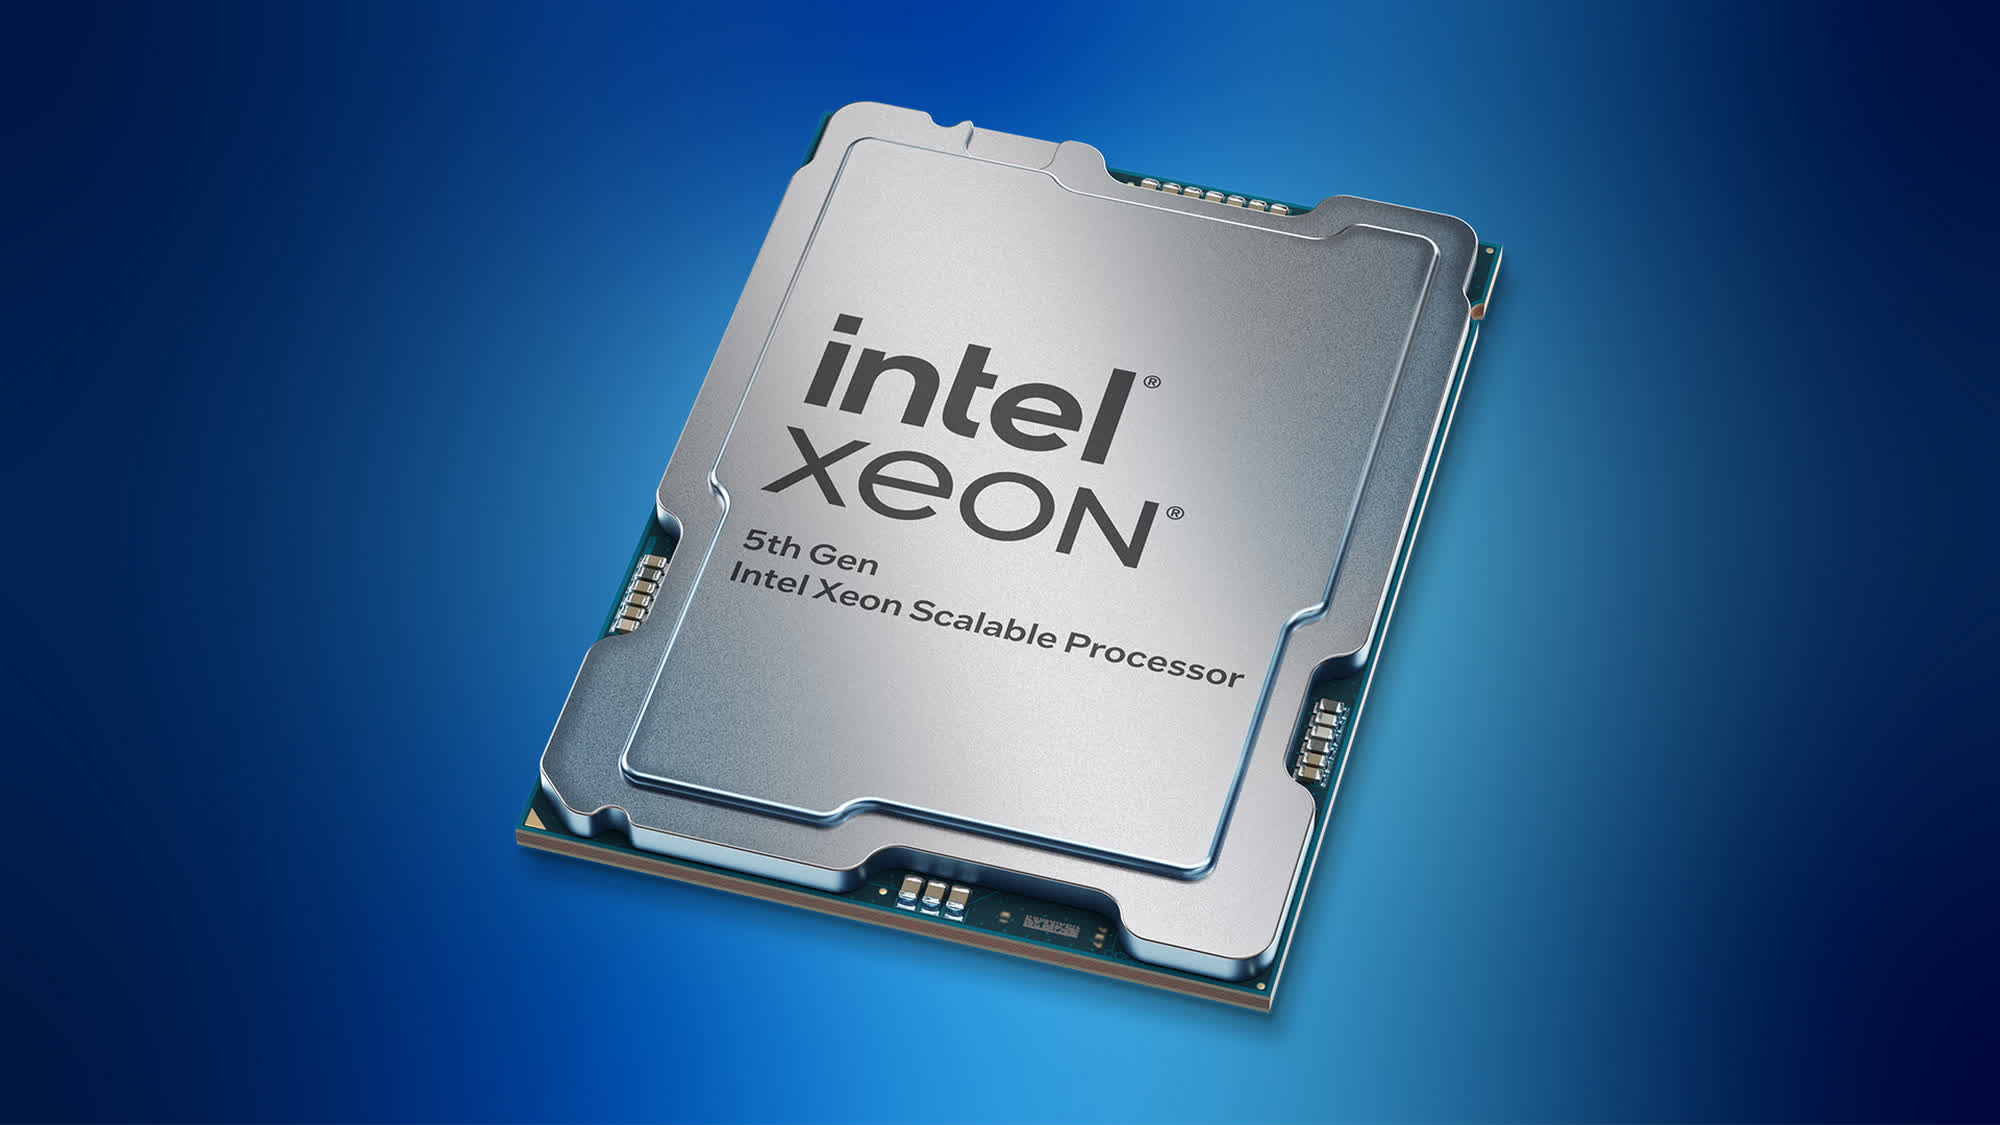 Intel refuta las afirmaciones de AMD y dice que su Xeon de quinta generación es más rápido que Epyc Turin en cargas de trabajo de IA